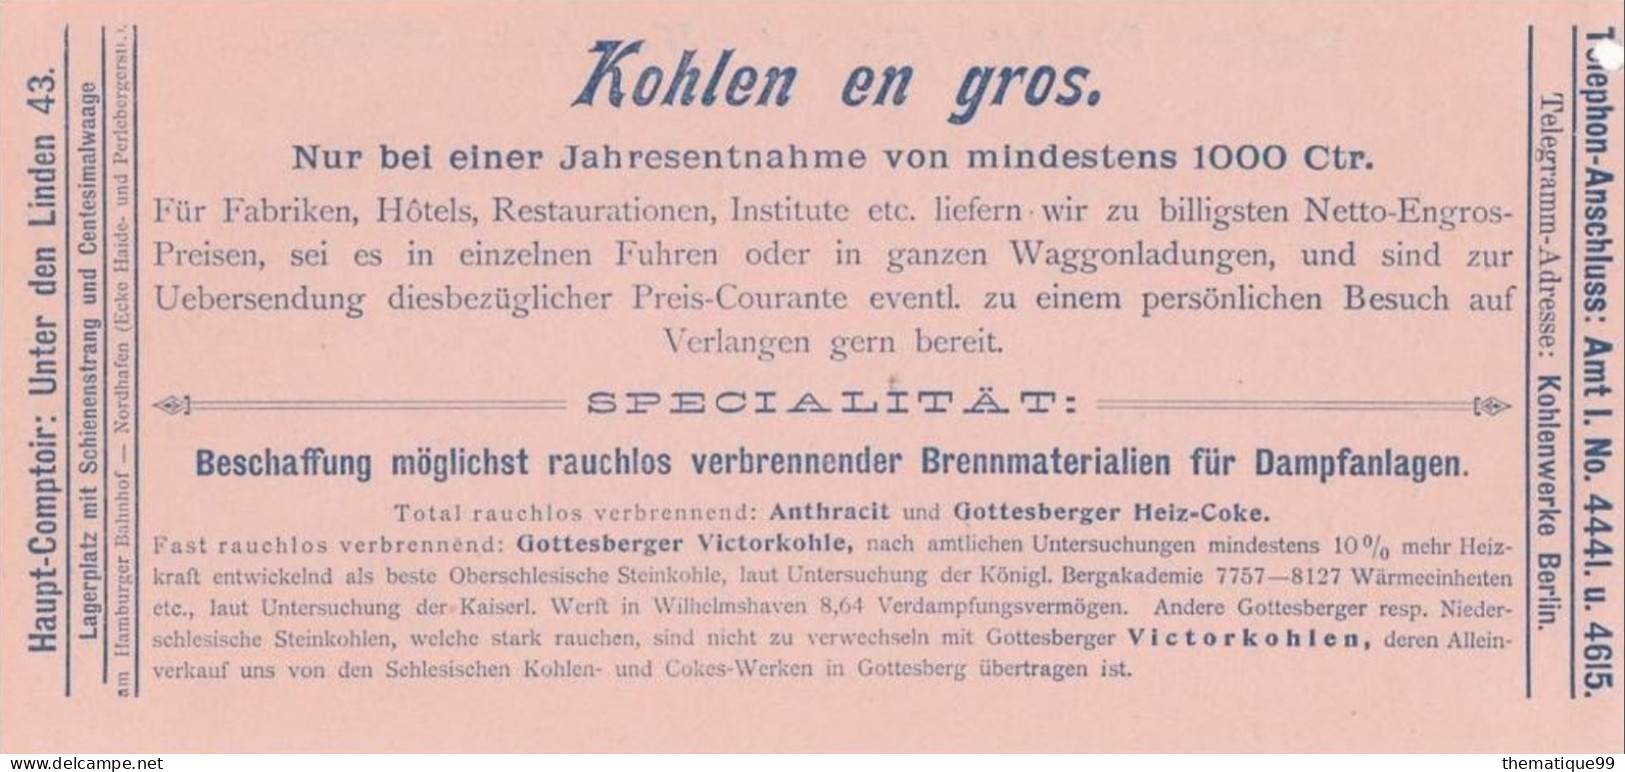 Entier Postal Poste Locale De Berlin Provenant D'un Carnet Avec Publicités Du Carnet (1897): Bois Charbon Coke Chauffage - Arbres